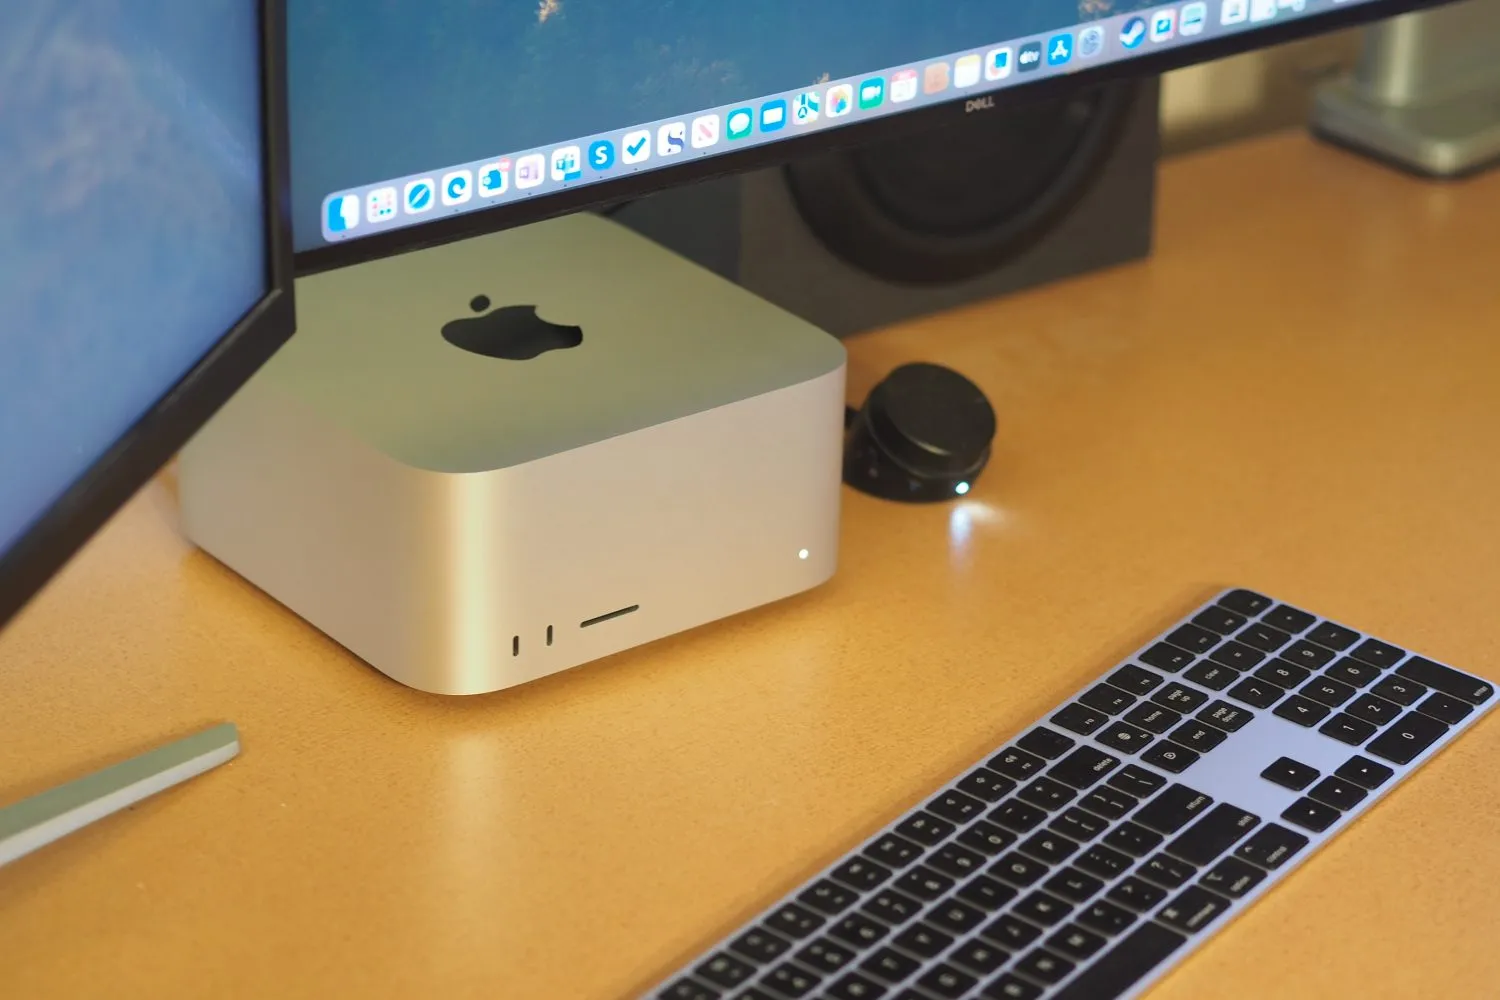 Vista superior de Apple Mac Studio mostrando PC y teclado.